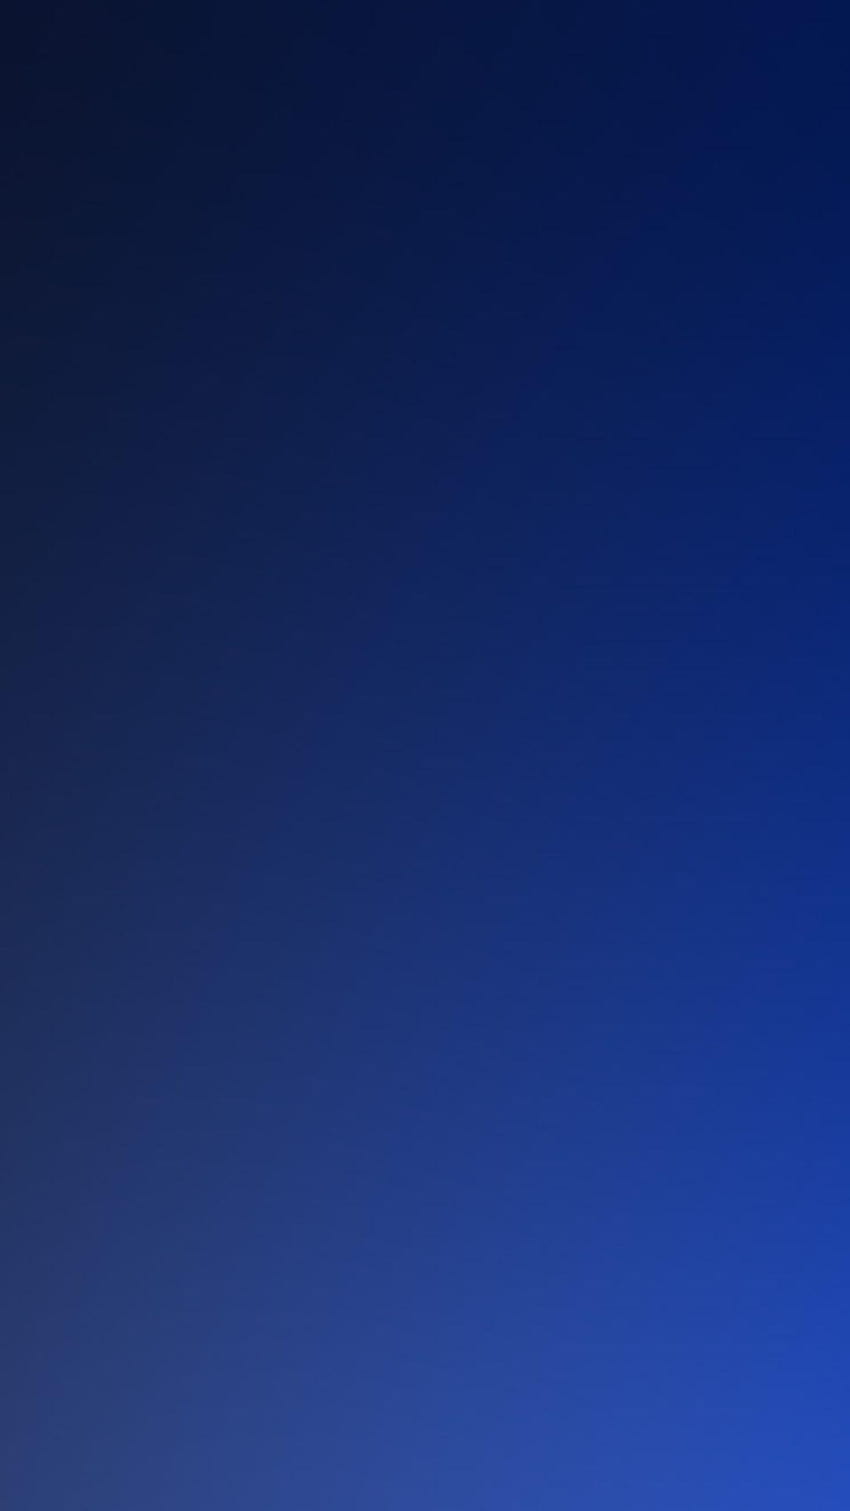 Pure Dark Blue Ocean Gradation Blur Backgrounds iPhone 6, blue blur HD phone wallpaper